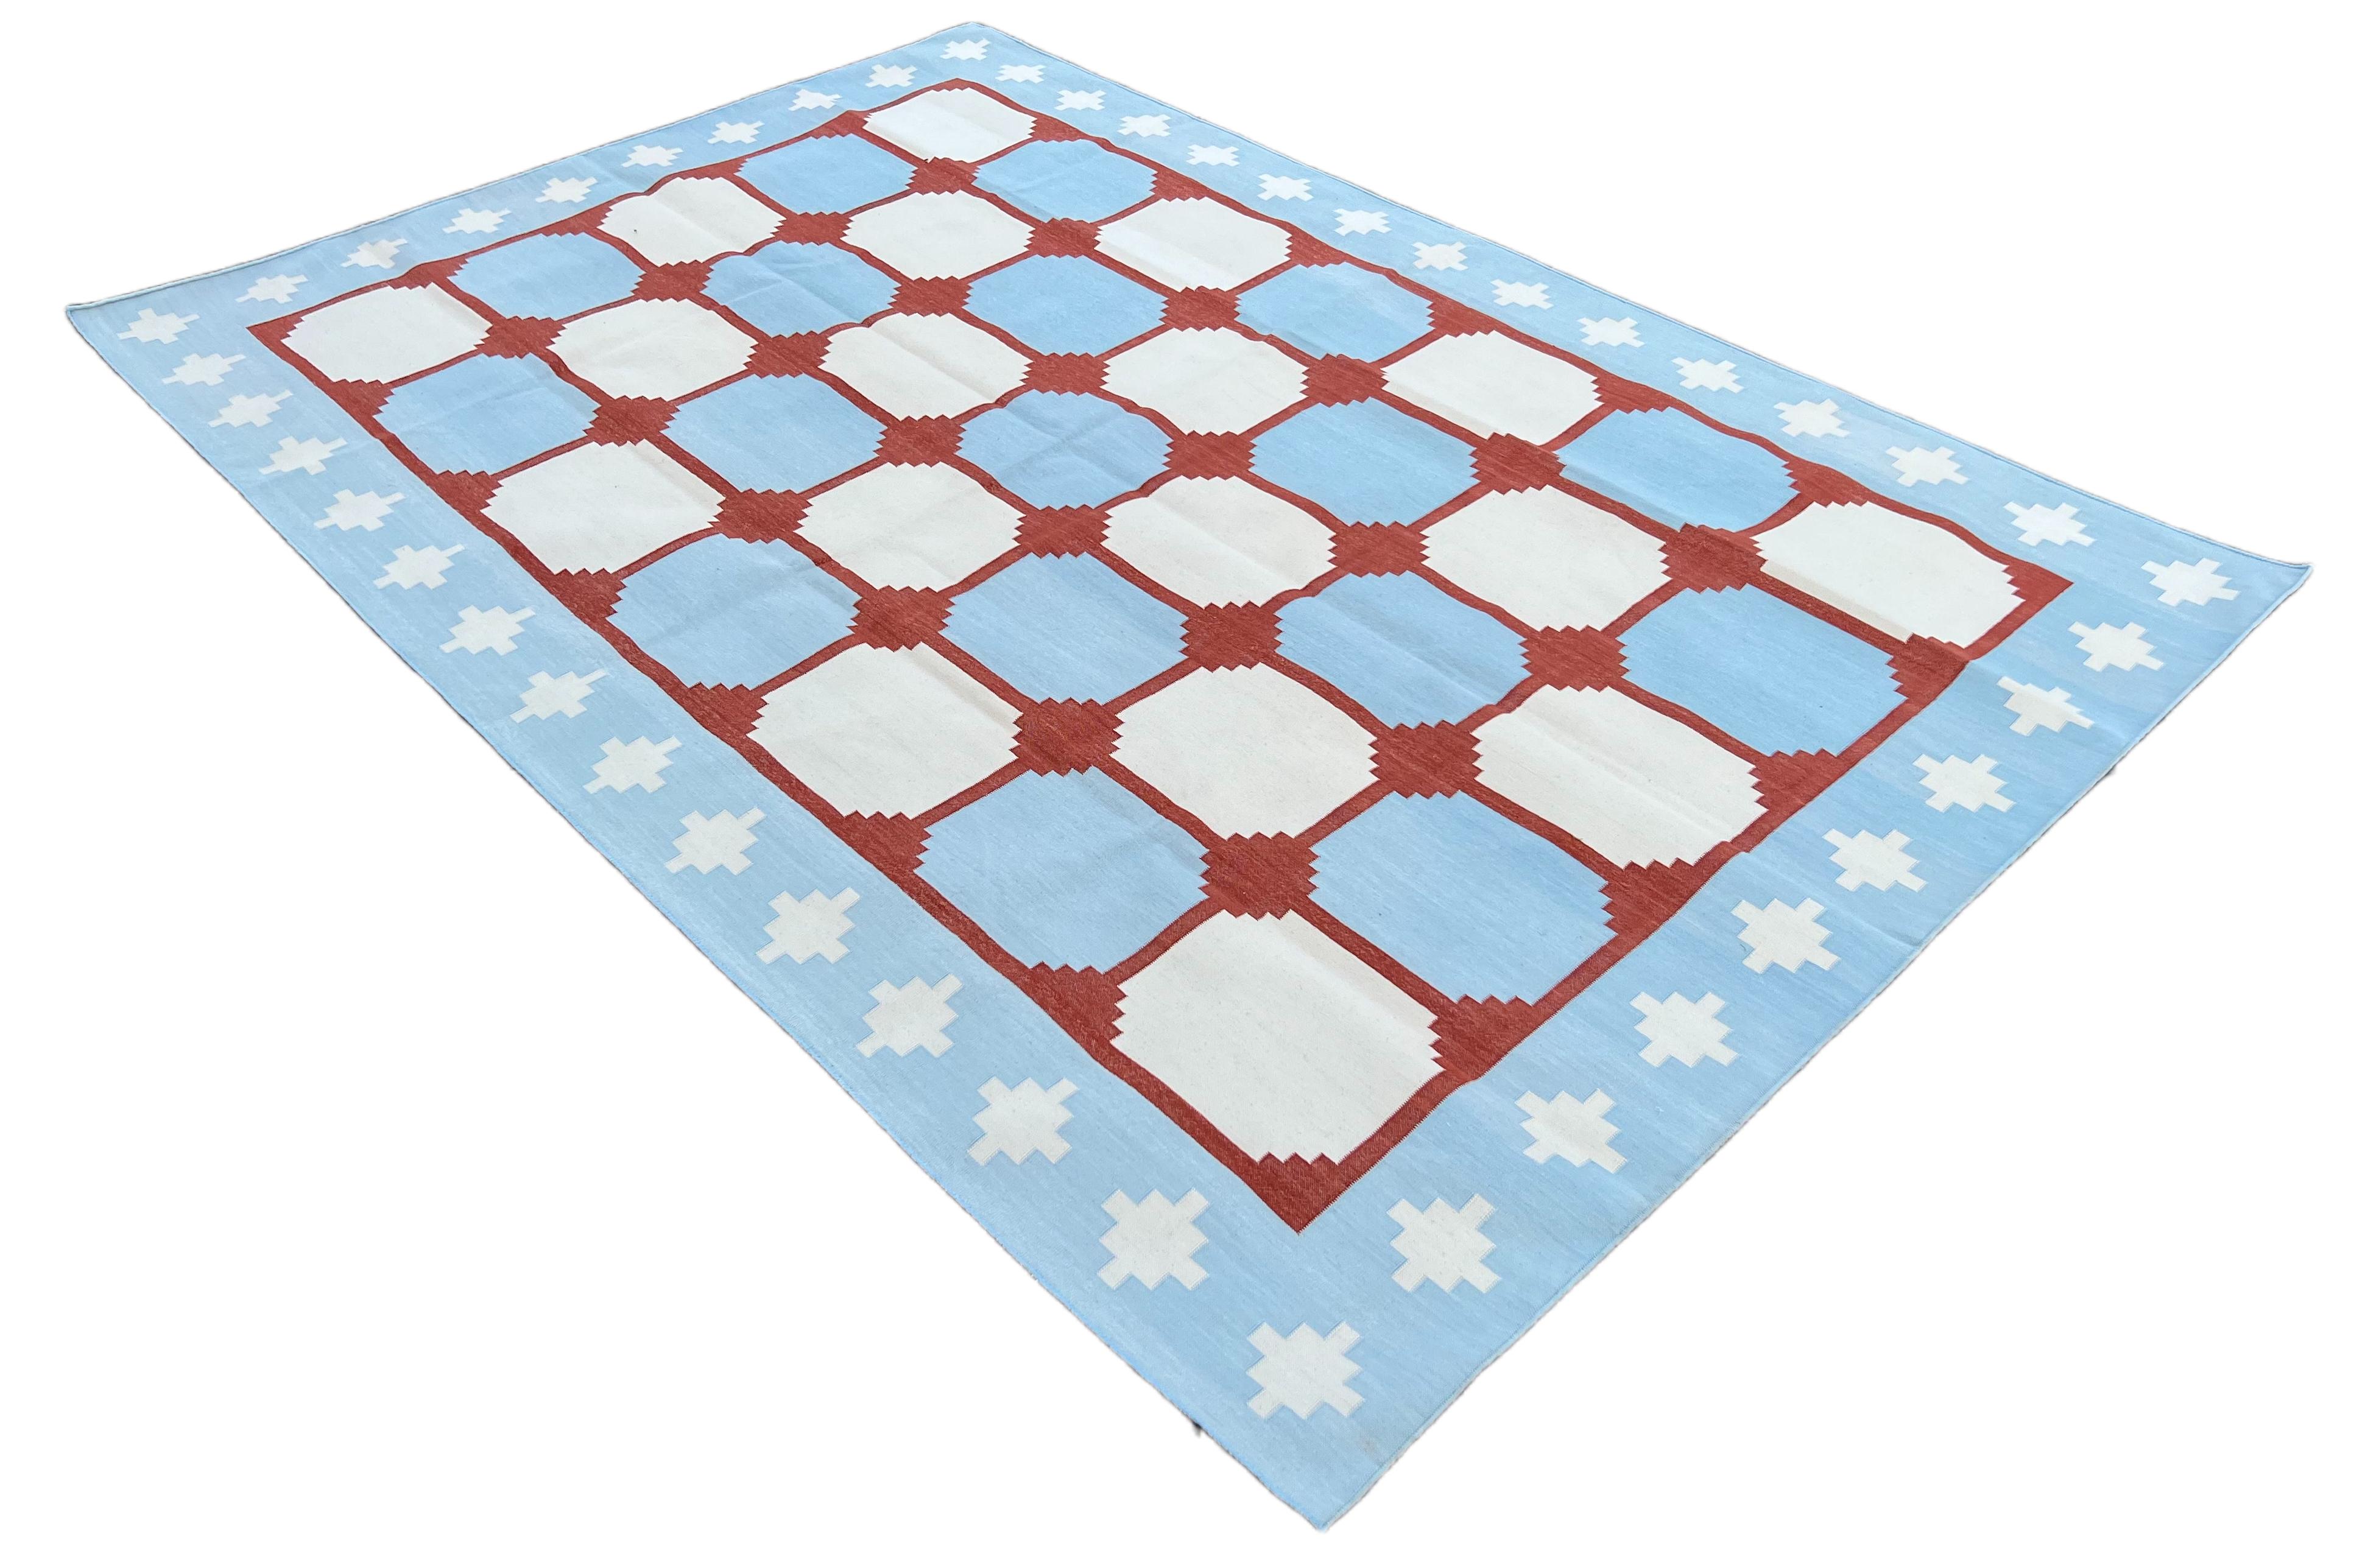 Baumwolle pflanzlich gefärbt Reversible Himmelblau und Rot Indian Star Geometrische Teppich - 6'x9'
Diese speziellen flachgewebten Dhurries werden aus 15-fachem Garn aus 100% Baumwolle handgewebt. Aufgrund der speziellen Fertigungstechniken, die zur